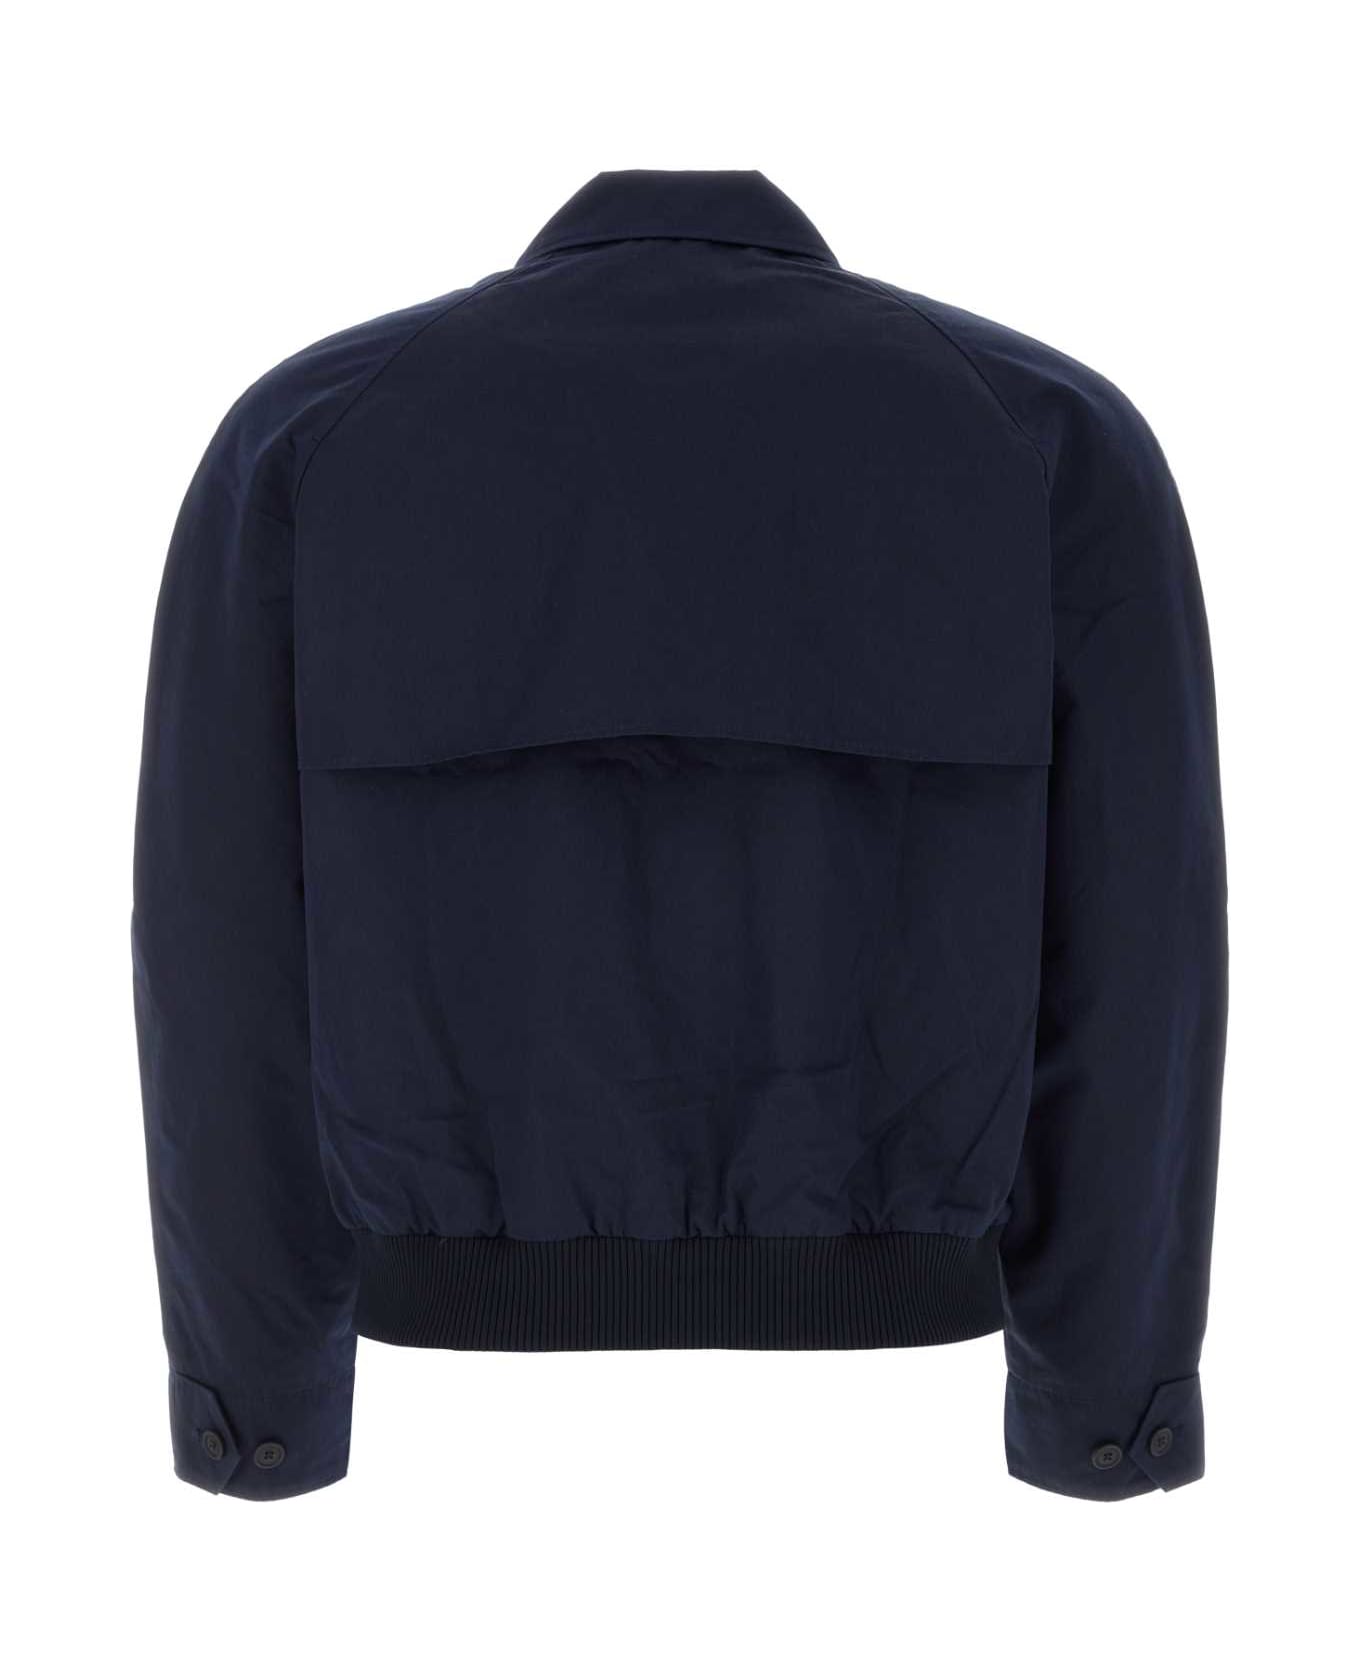 Maison Kitsuné Navy Blue Cotton Blend Jacket - INKBLUE